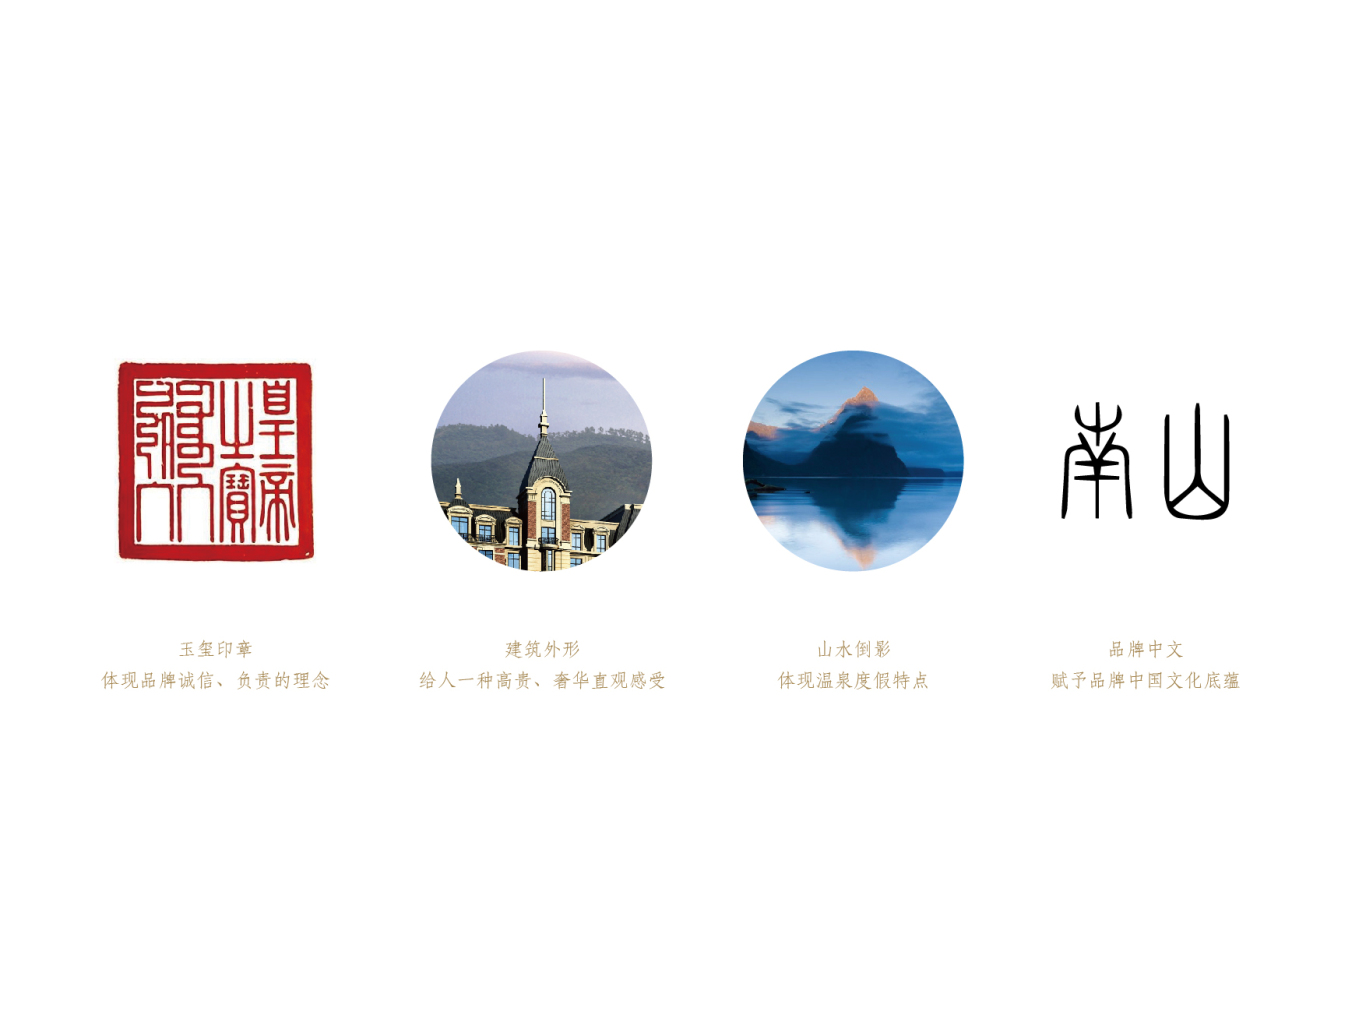 國信南山溫泉度假酒店品牌標志設計圖0